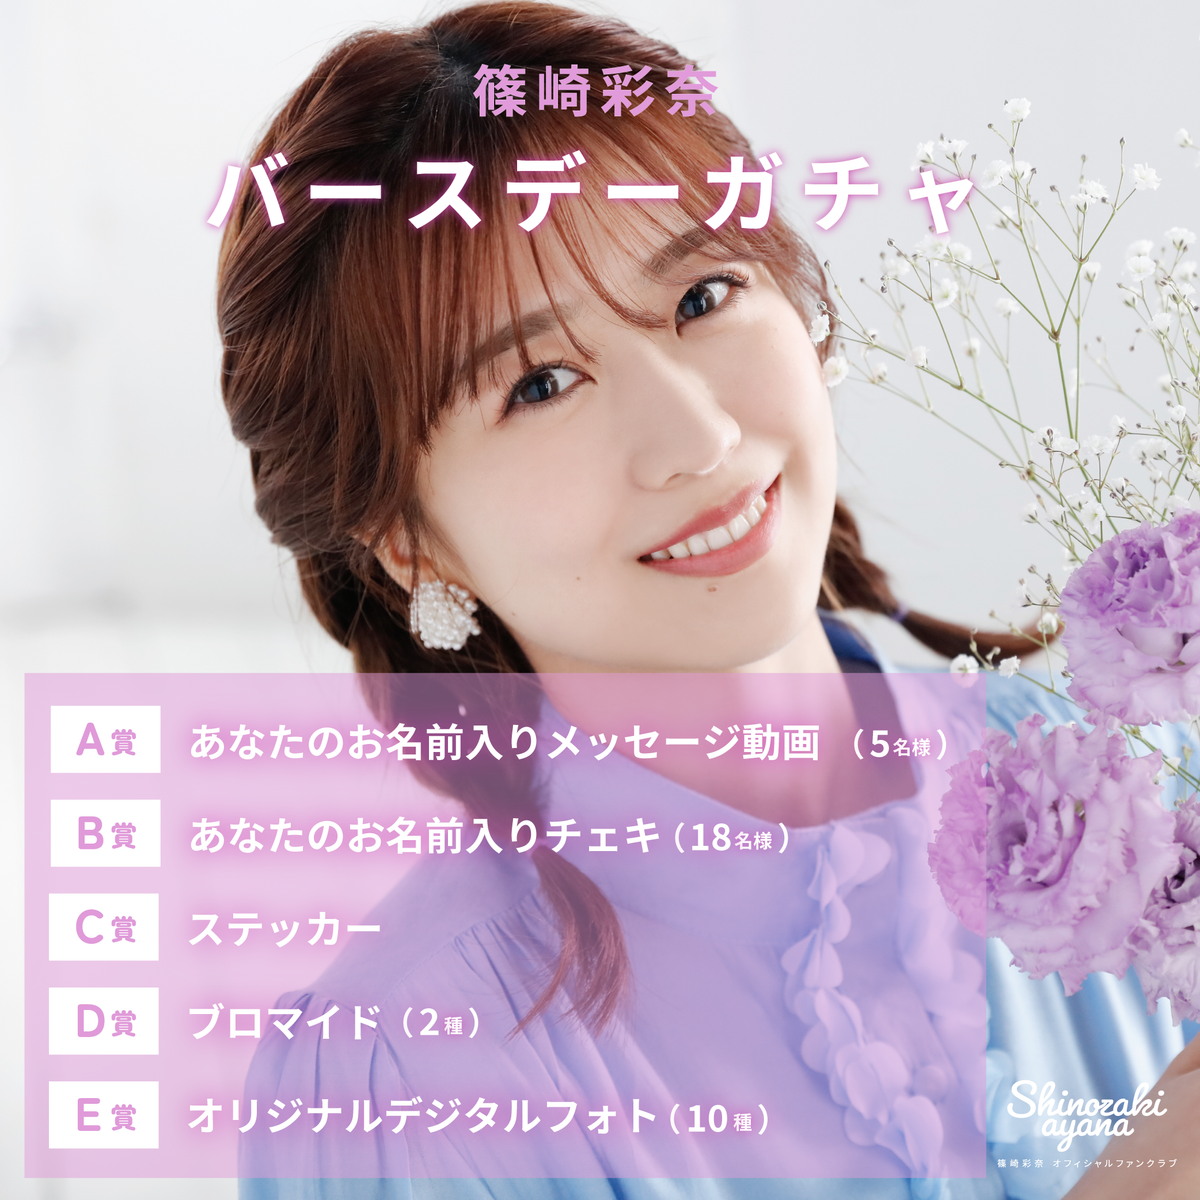 AKB48 Ayana Shinozaki Birthday Gacha